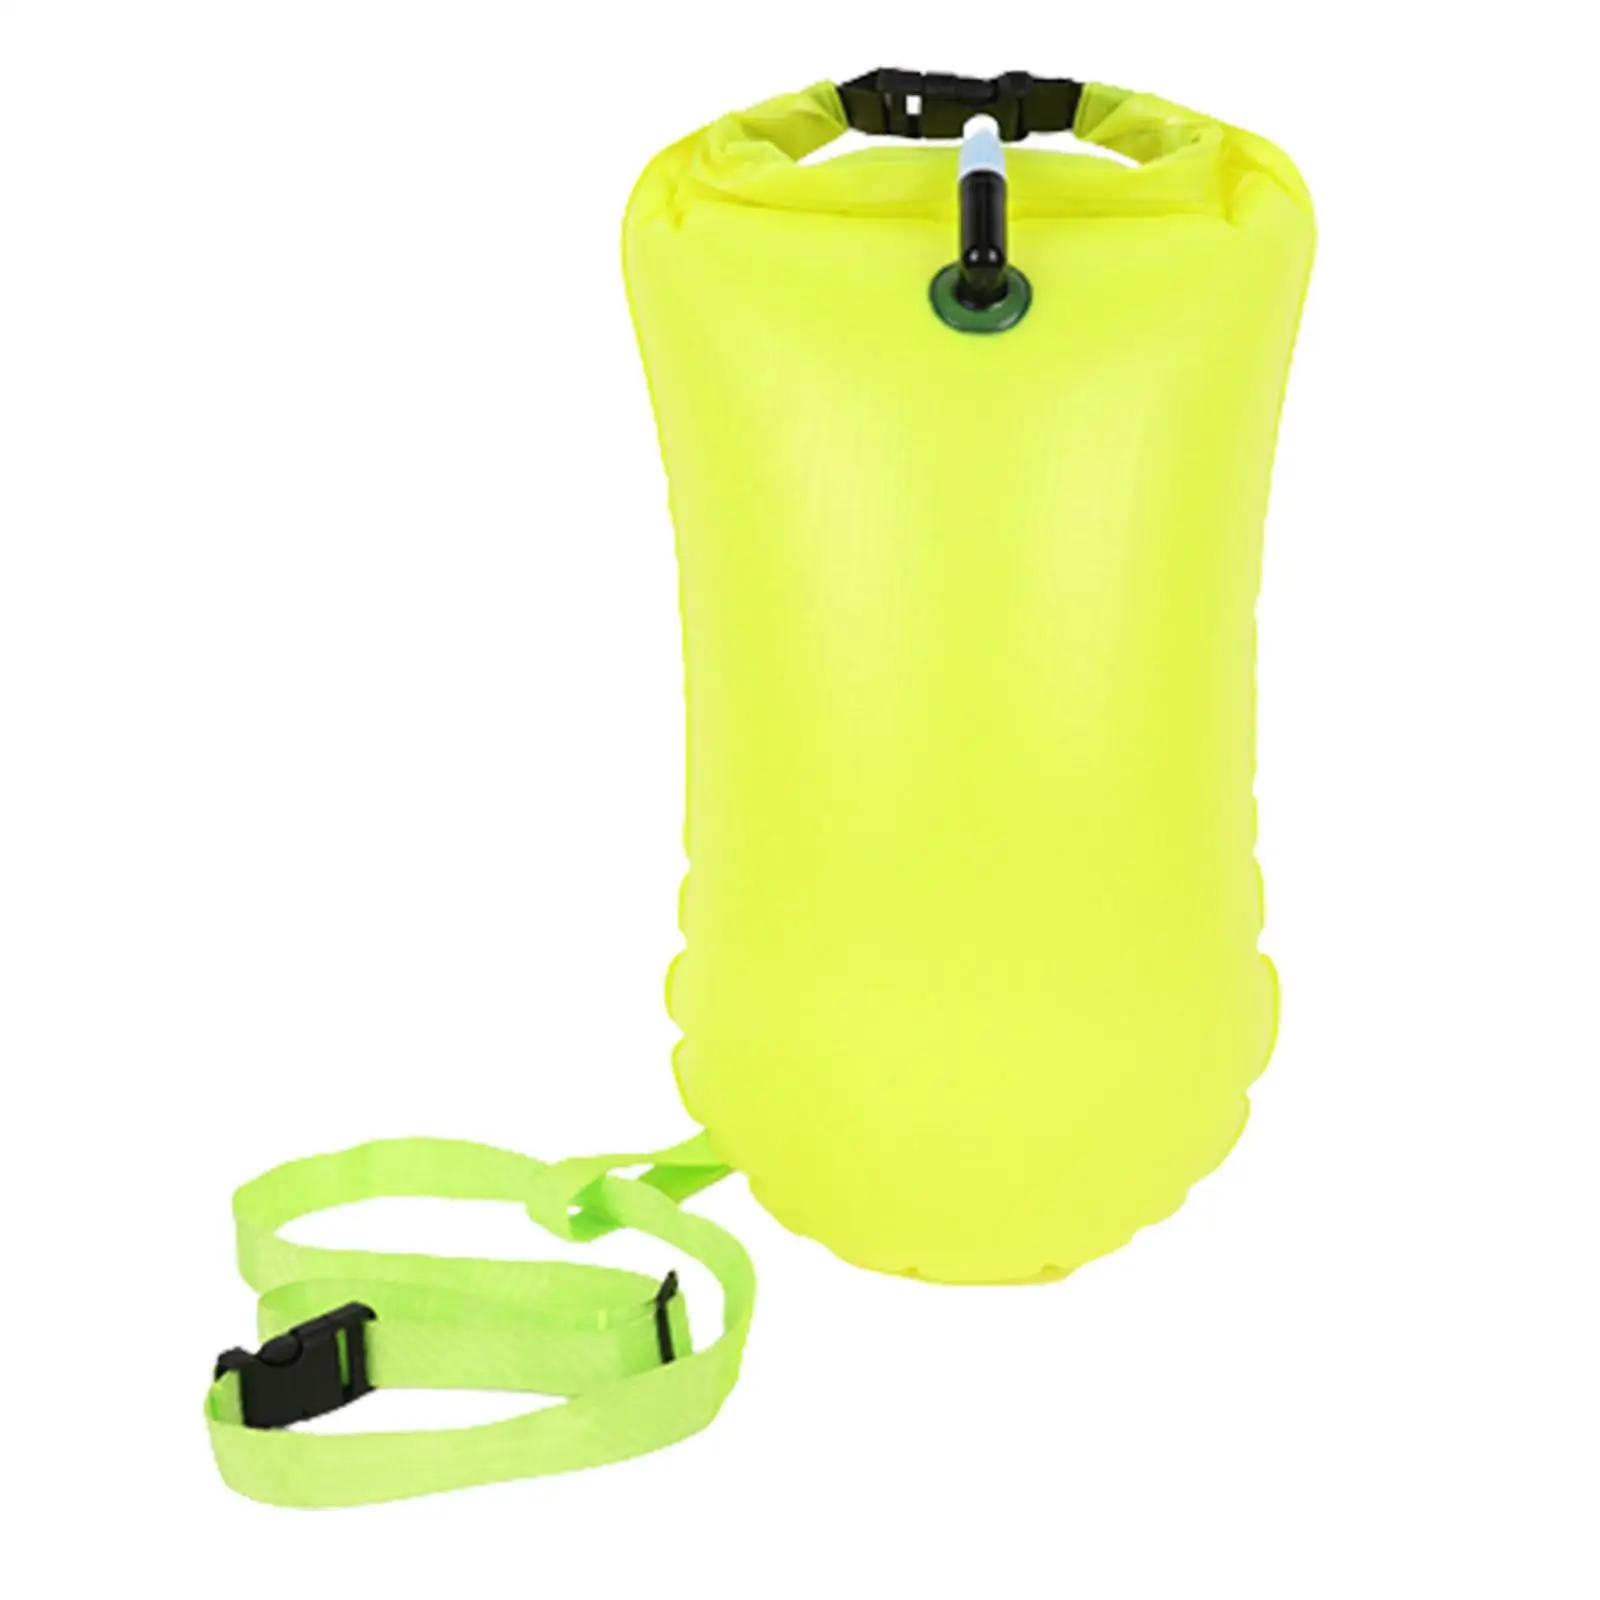 Swim Buoy Waterproof Bag Waterproof Storage Bag for Sailing Camping Diving